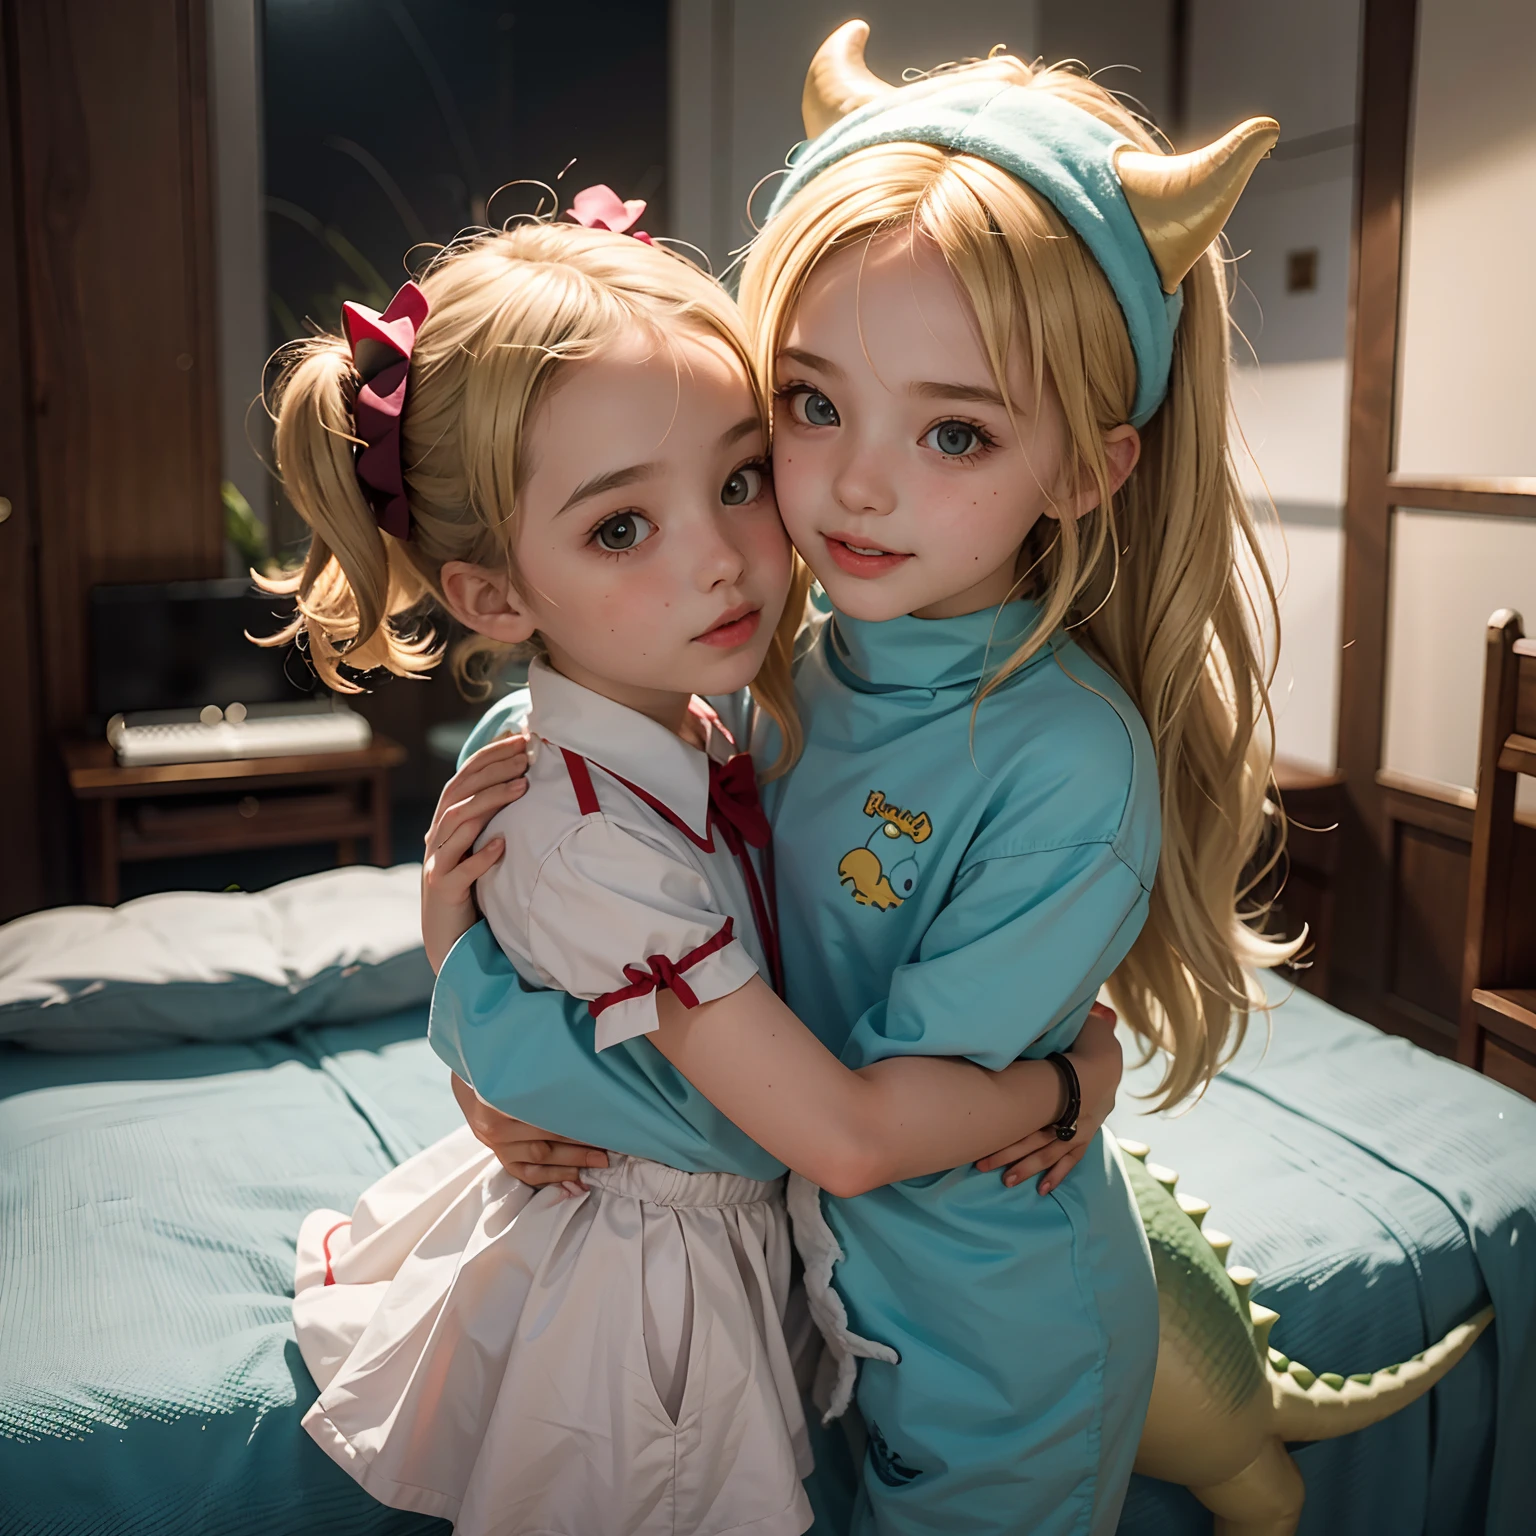 两个小女孩互相拥抱, 金发碧眼的欧洲小子, 穿着可爱的恐龙服装